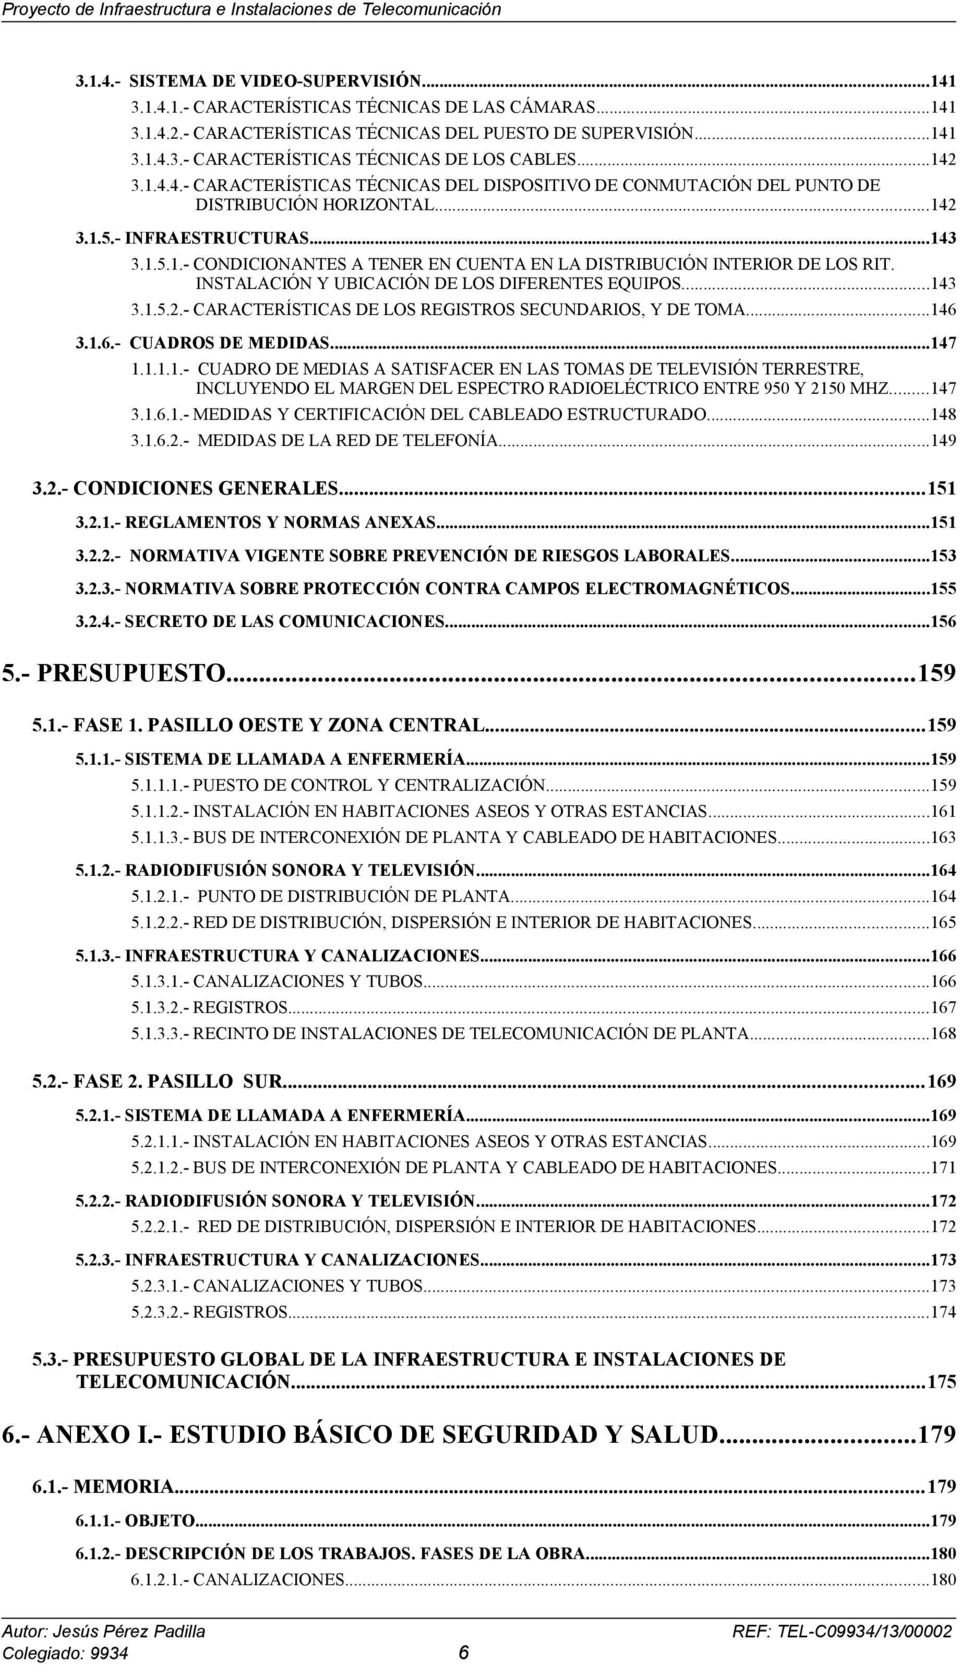 INSTALACIÓN Y UBICACIÓN DE LOS DIFERENTES EQUIPOS...143 3.1.5.2.- CARACTERÍSTICAS DE LOS REGISTROS SECUNDARIOS, Y DE TOMA...146 3.1.6.- CUADROS DE MEDIDAS...147 1.1.1.1.- CUADRO DE MEDIAS A SATISFACER EN LAS TOMAS DE TELEVISIÓN TERRESTRE, INCLUYENDO EL MARGEN DEL ESPECTRO RADIOELÉCTRICO ENTRE 950 Y 2150 MHZ.